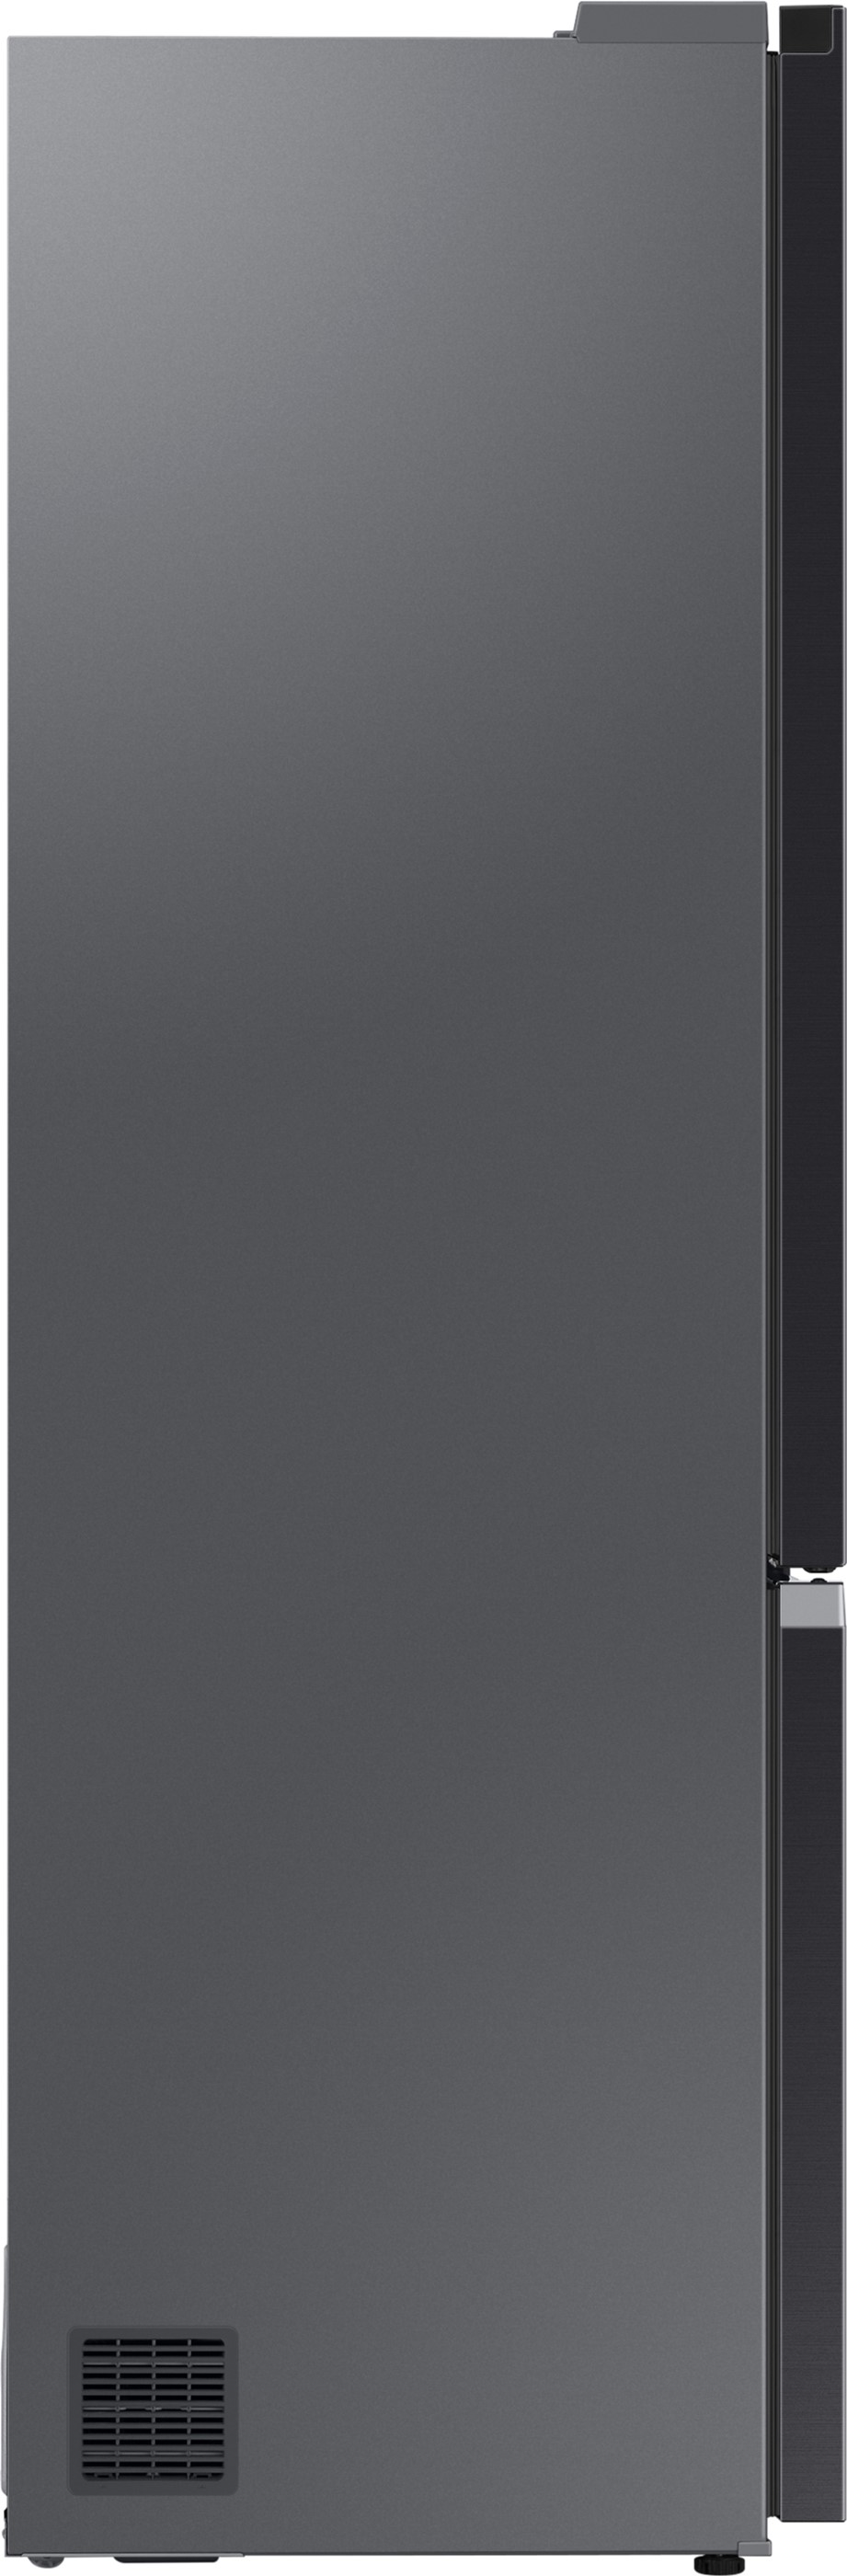 Холодильник Samsung RB38C676EB1/UA отзывы - изображения 5